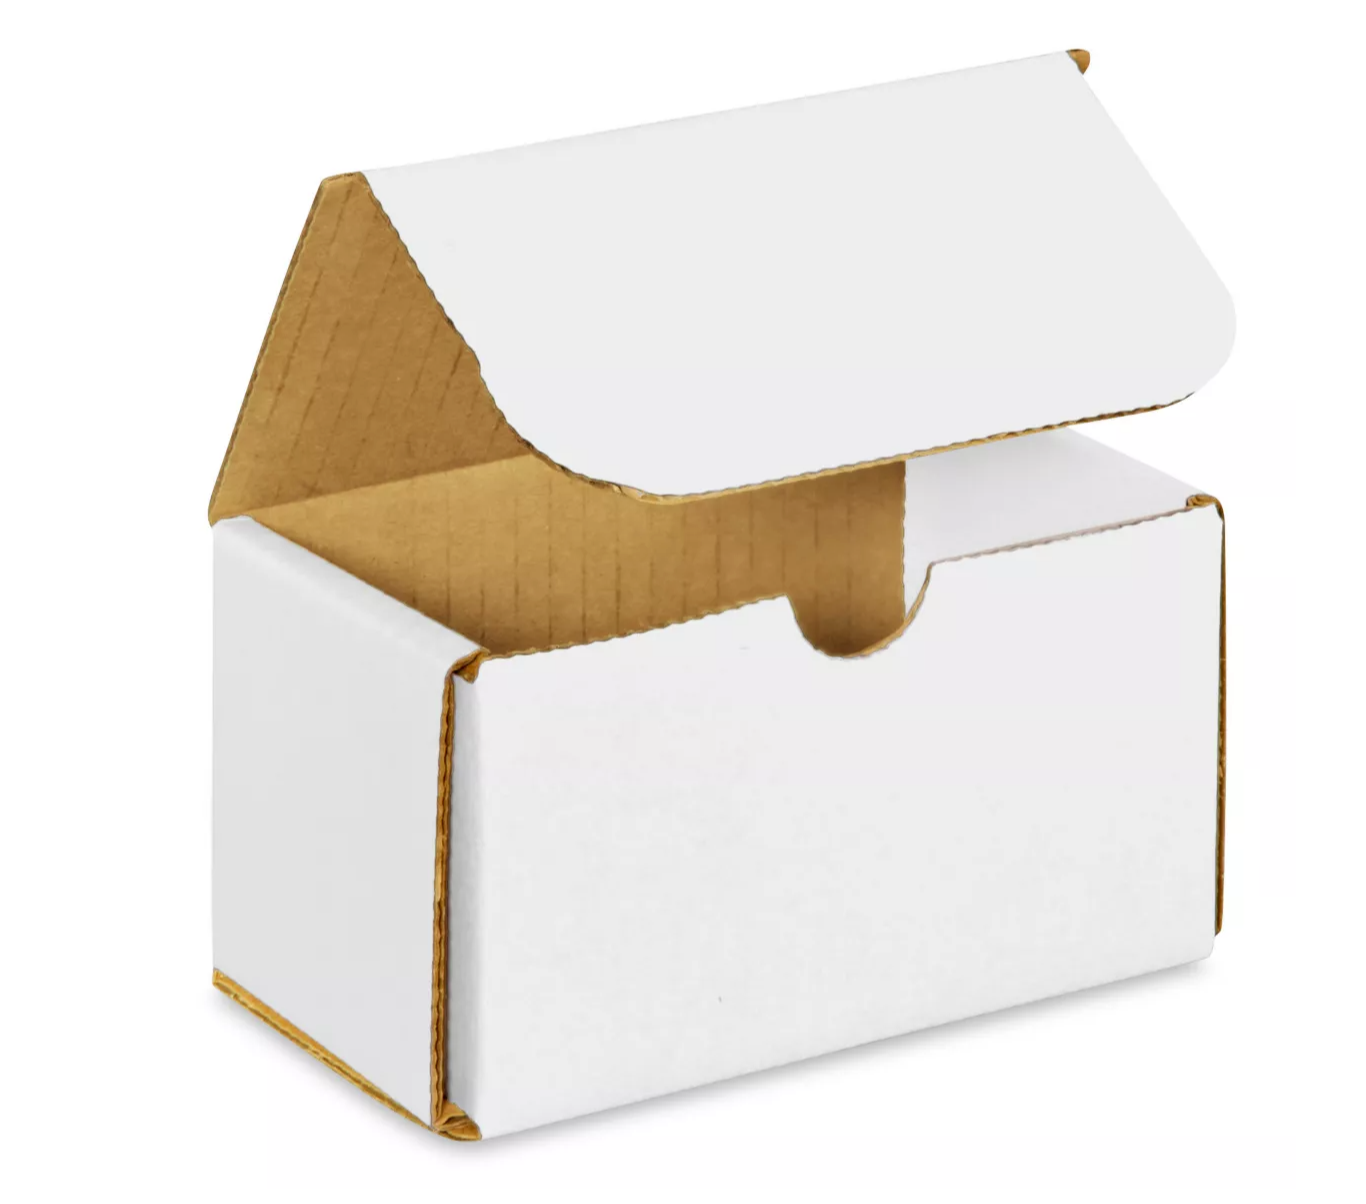 Boîtes d'expédition en carton blanc - Petites/Moyennes